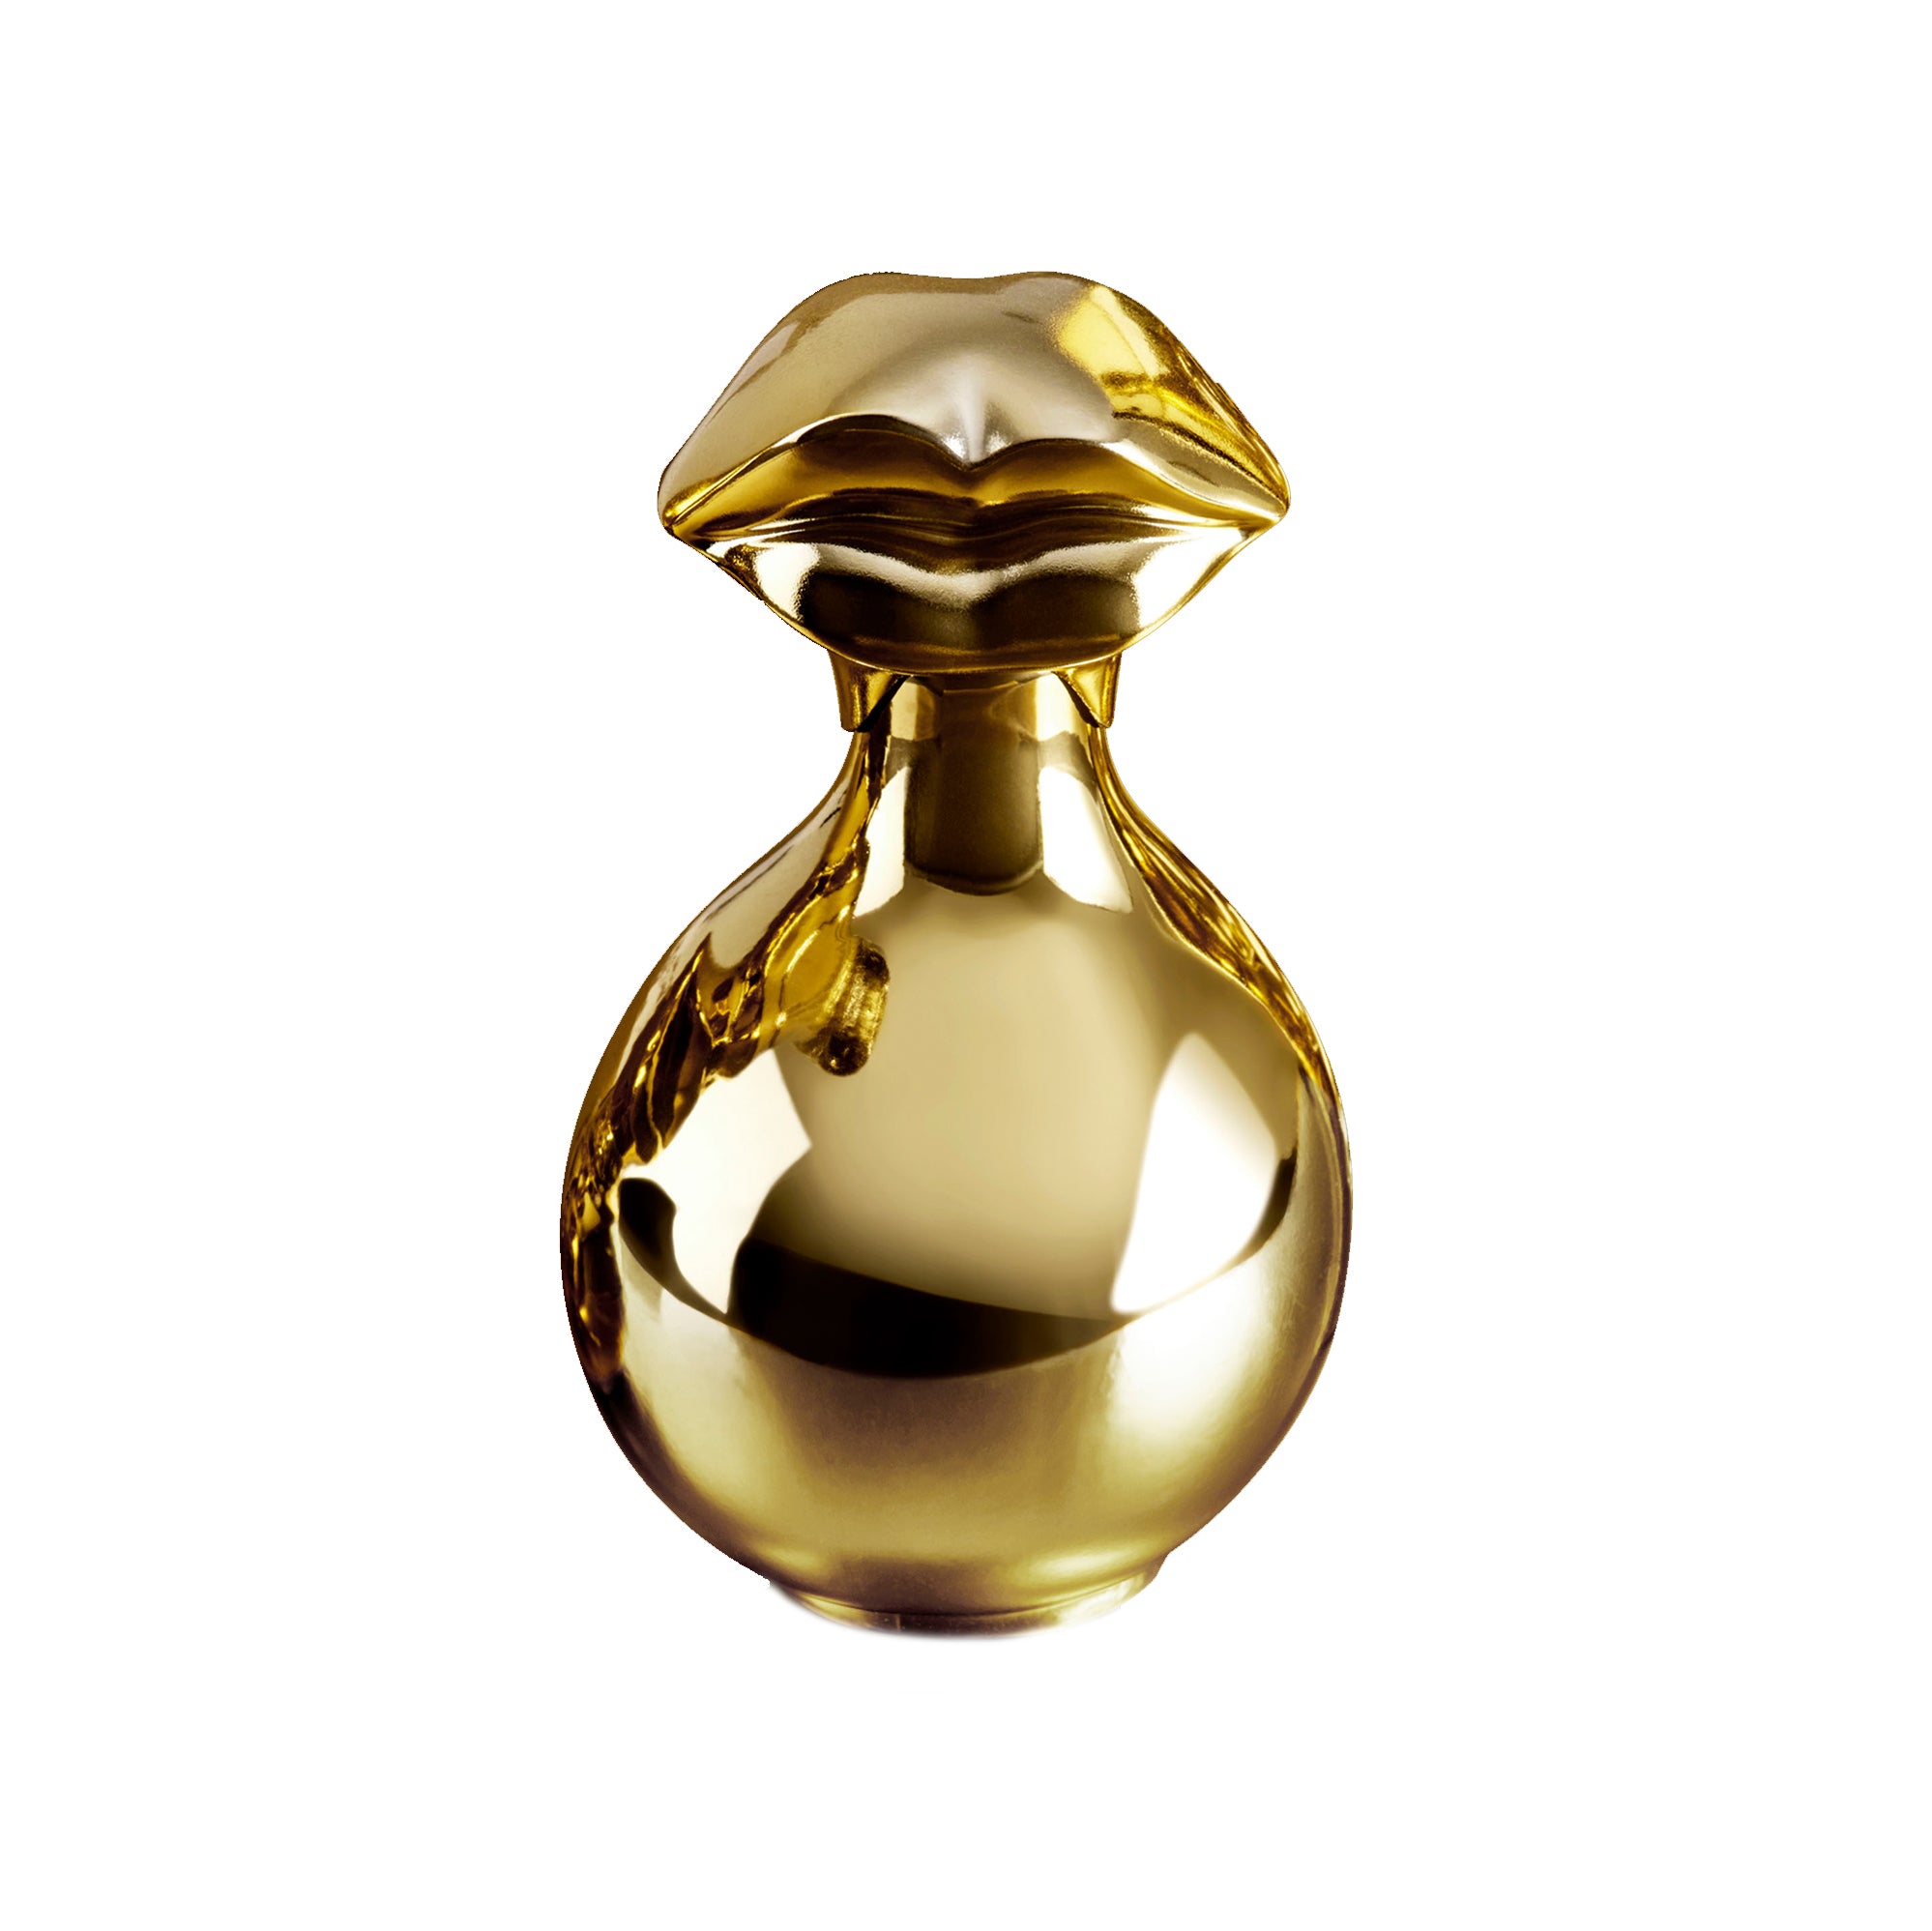 Bukhara Eau de Parfum 100ml Bottle by Dalí Haute Parfumerie